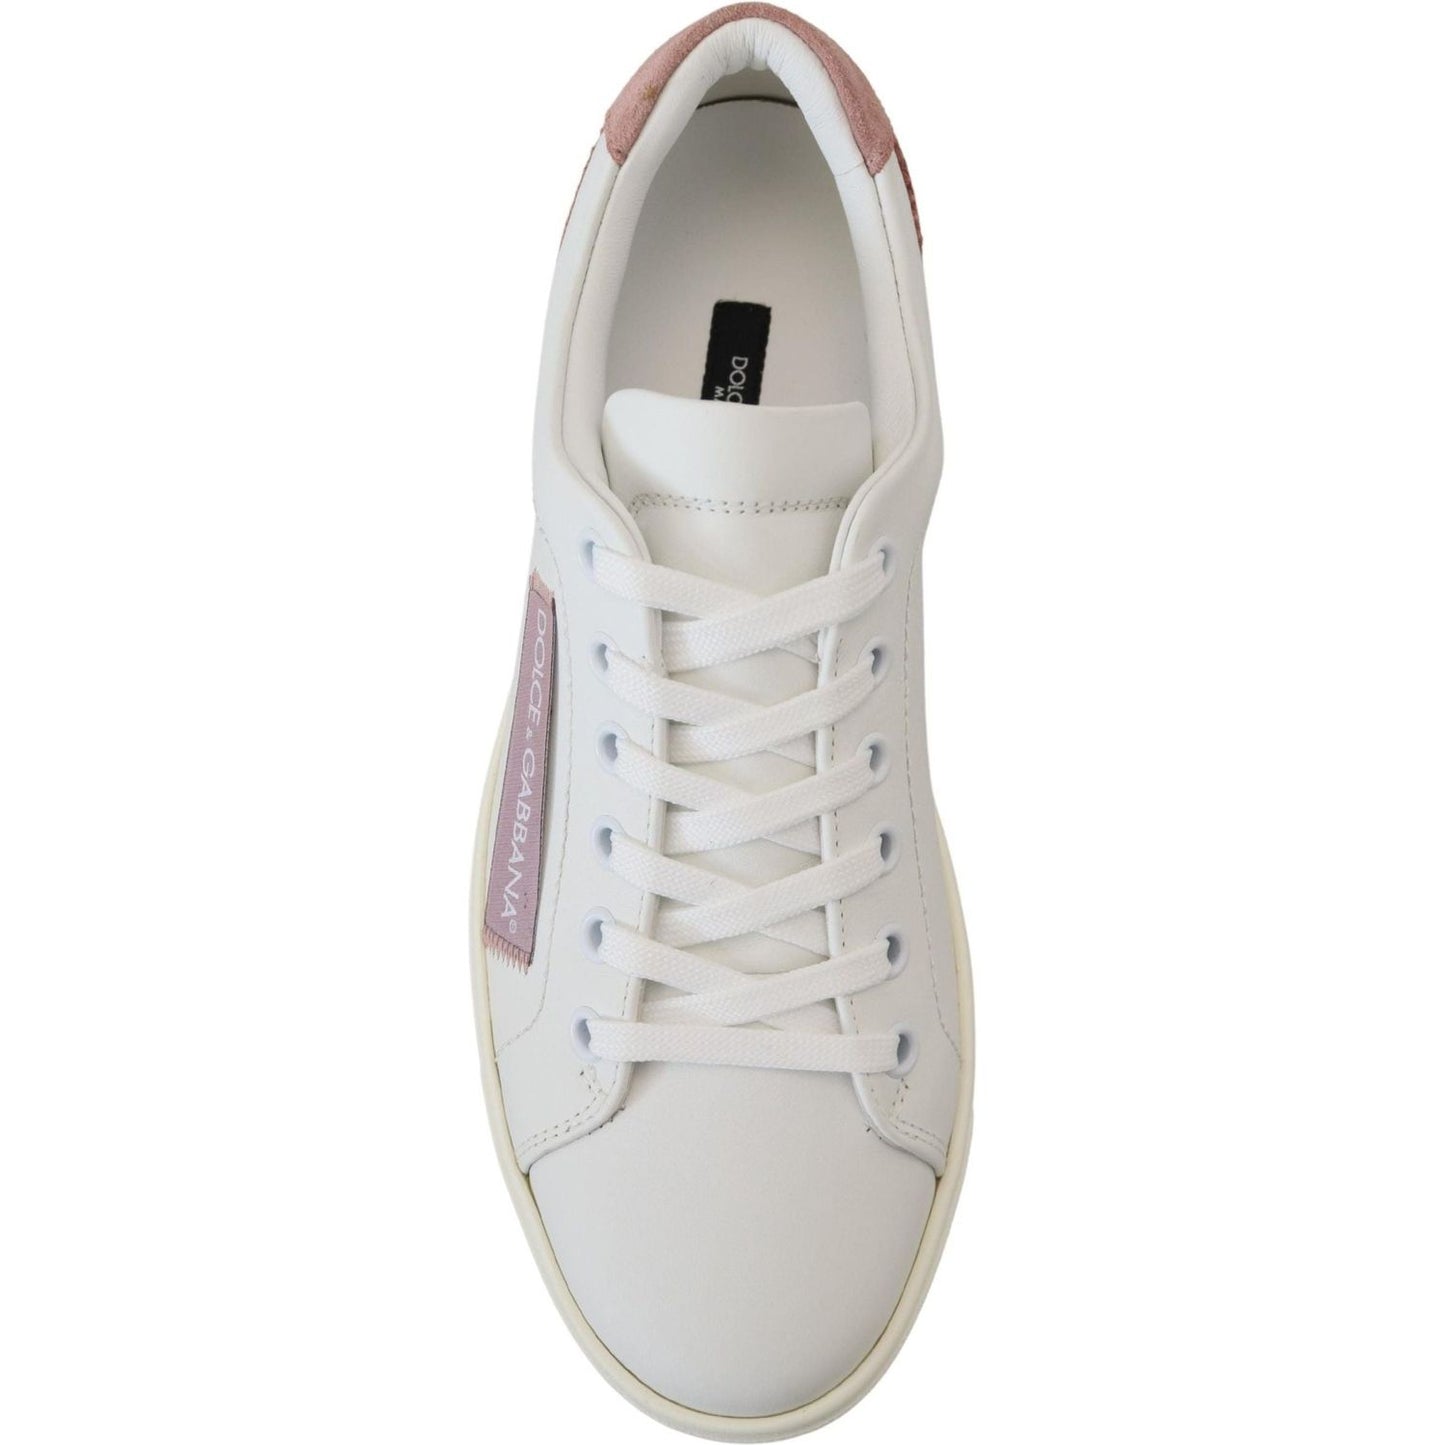 Dolce & GabbanaChic White Pink Leather Low-Top SneakersMcRichard Designer Brands£359.00